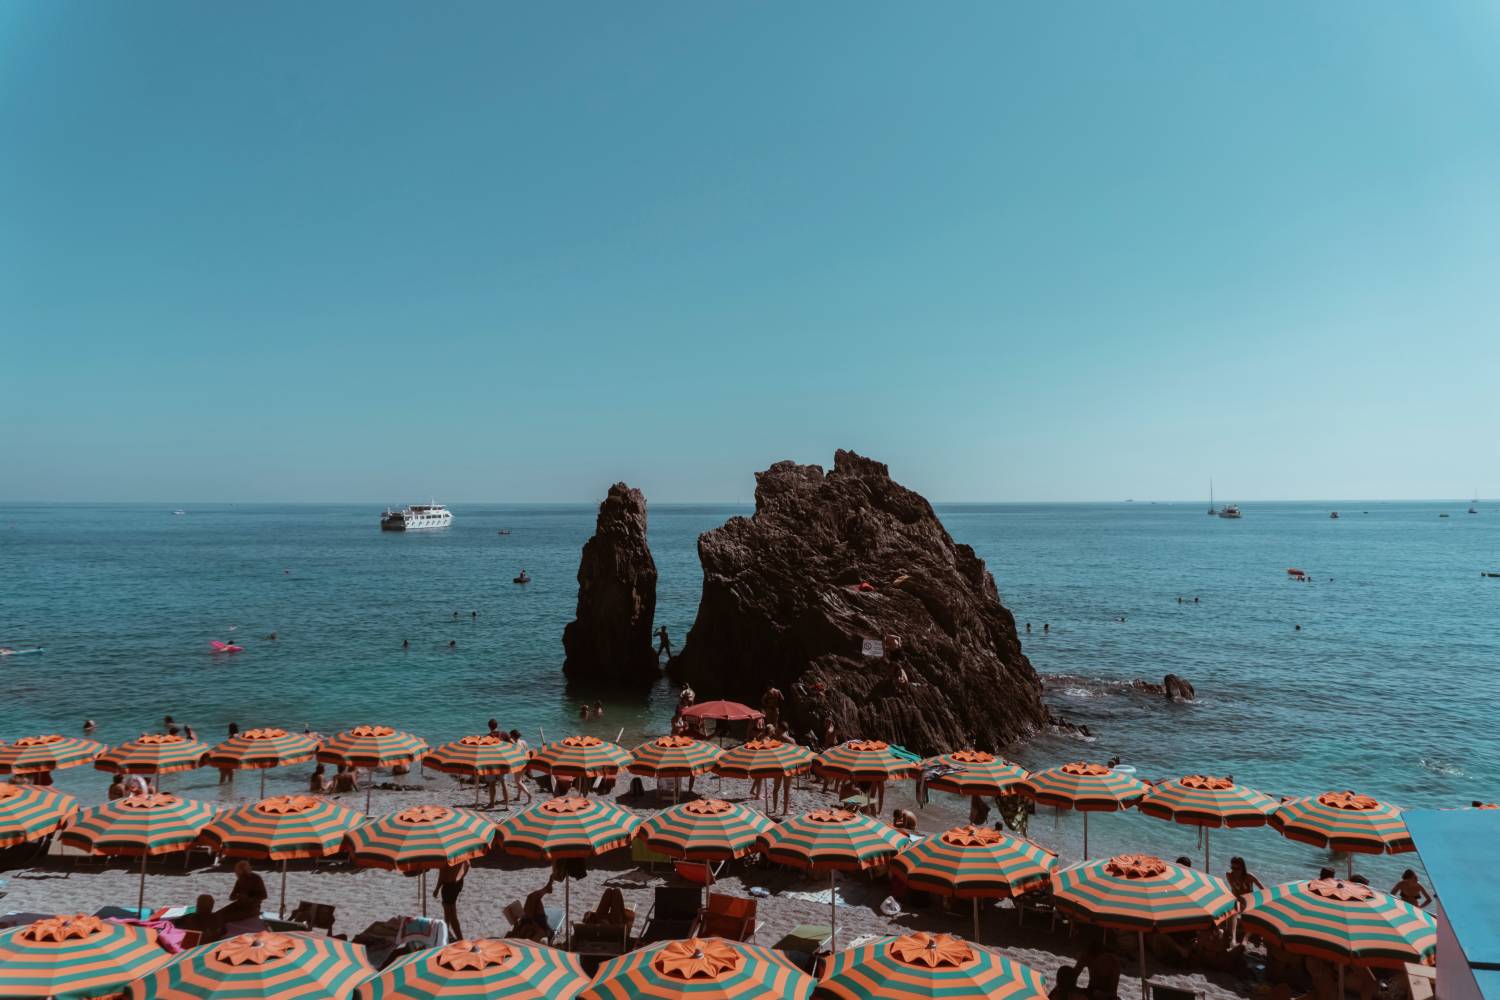 The Ultimate Cinque Terre Italy Guide - Monterosso